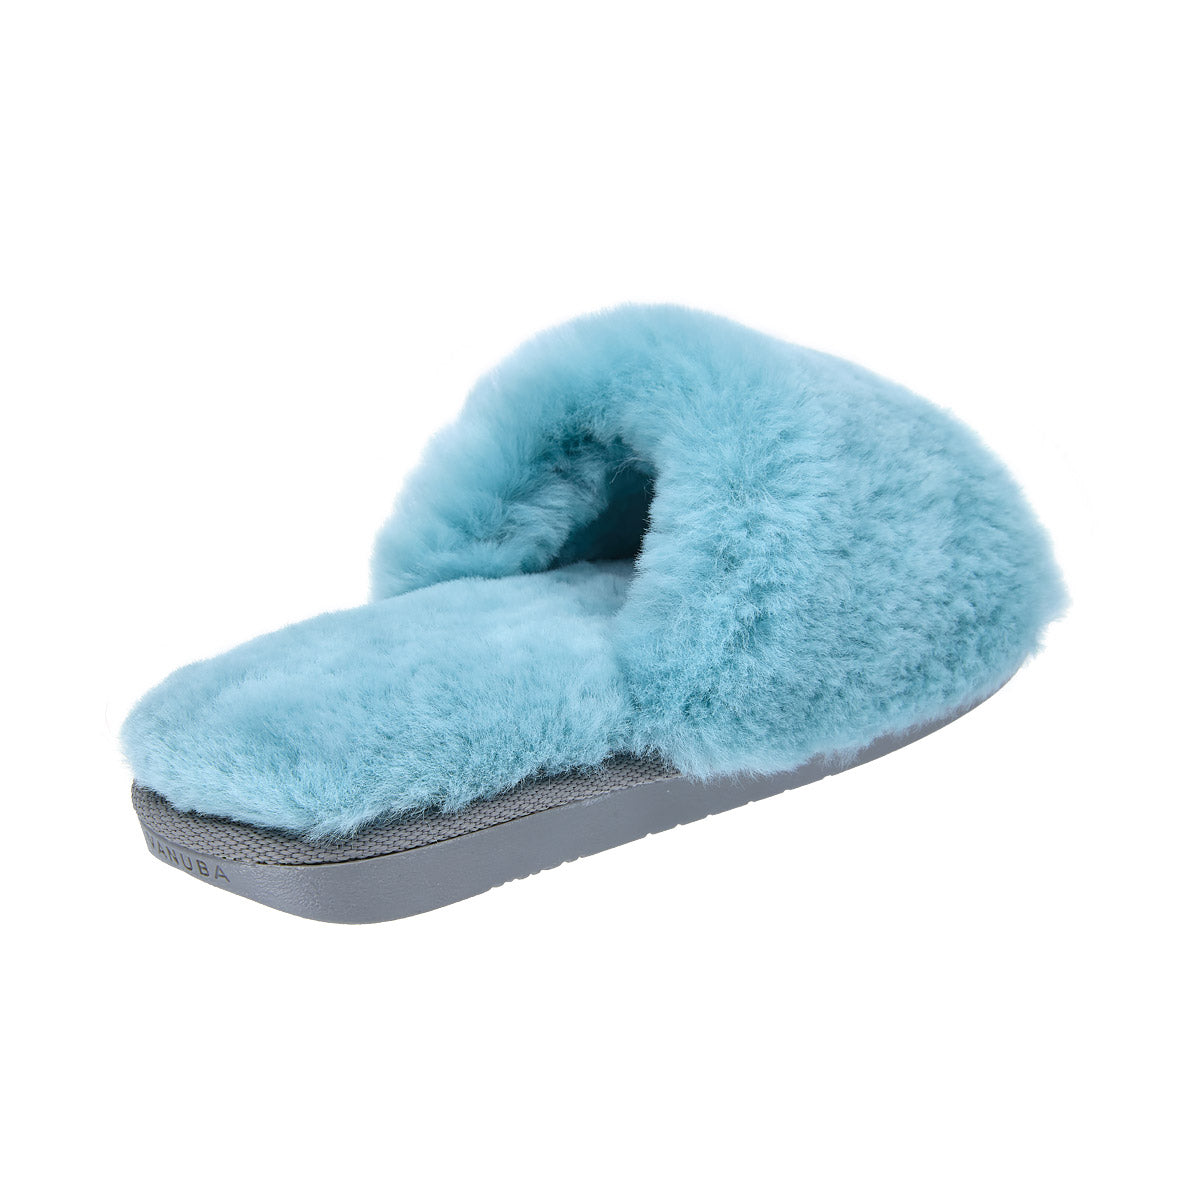 ANOA Sky blue sheep slippers